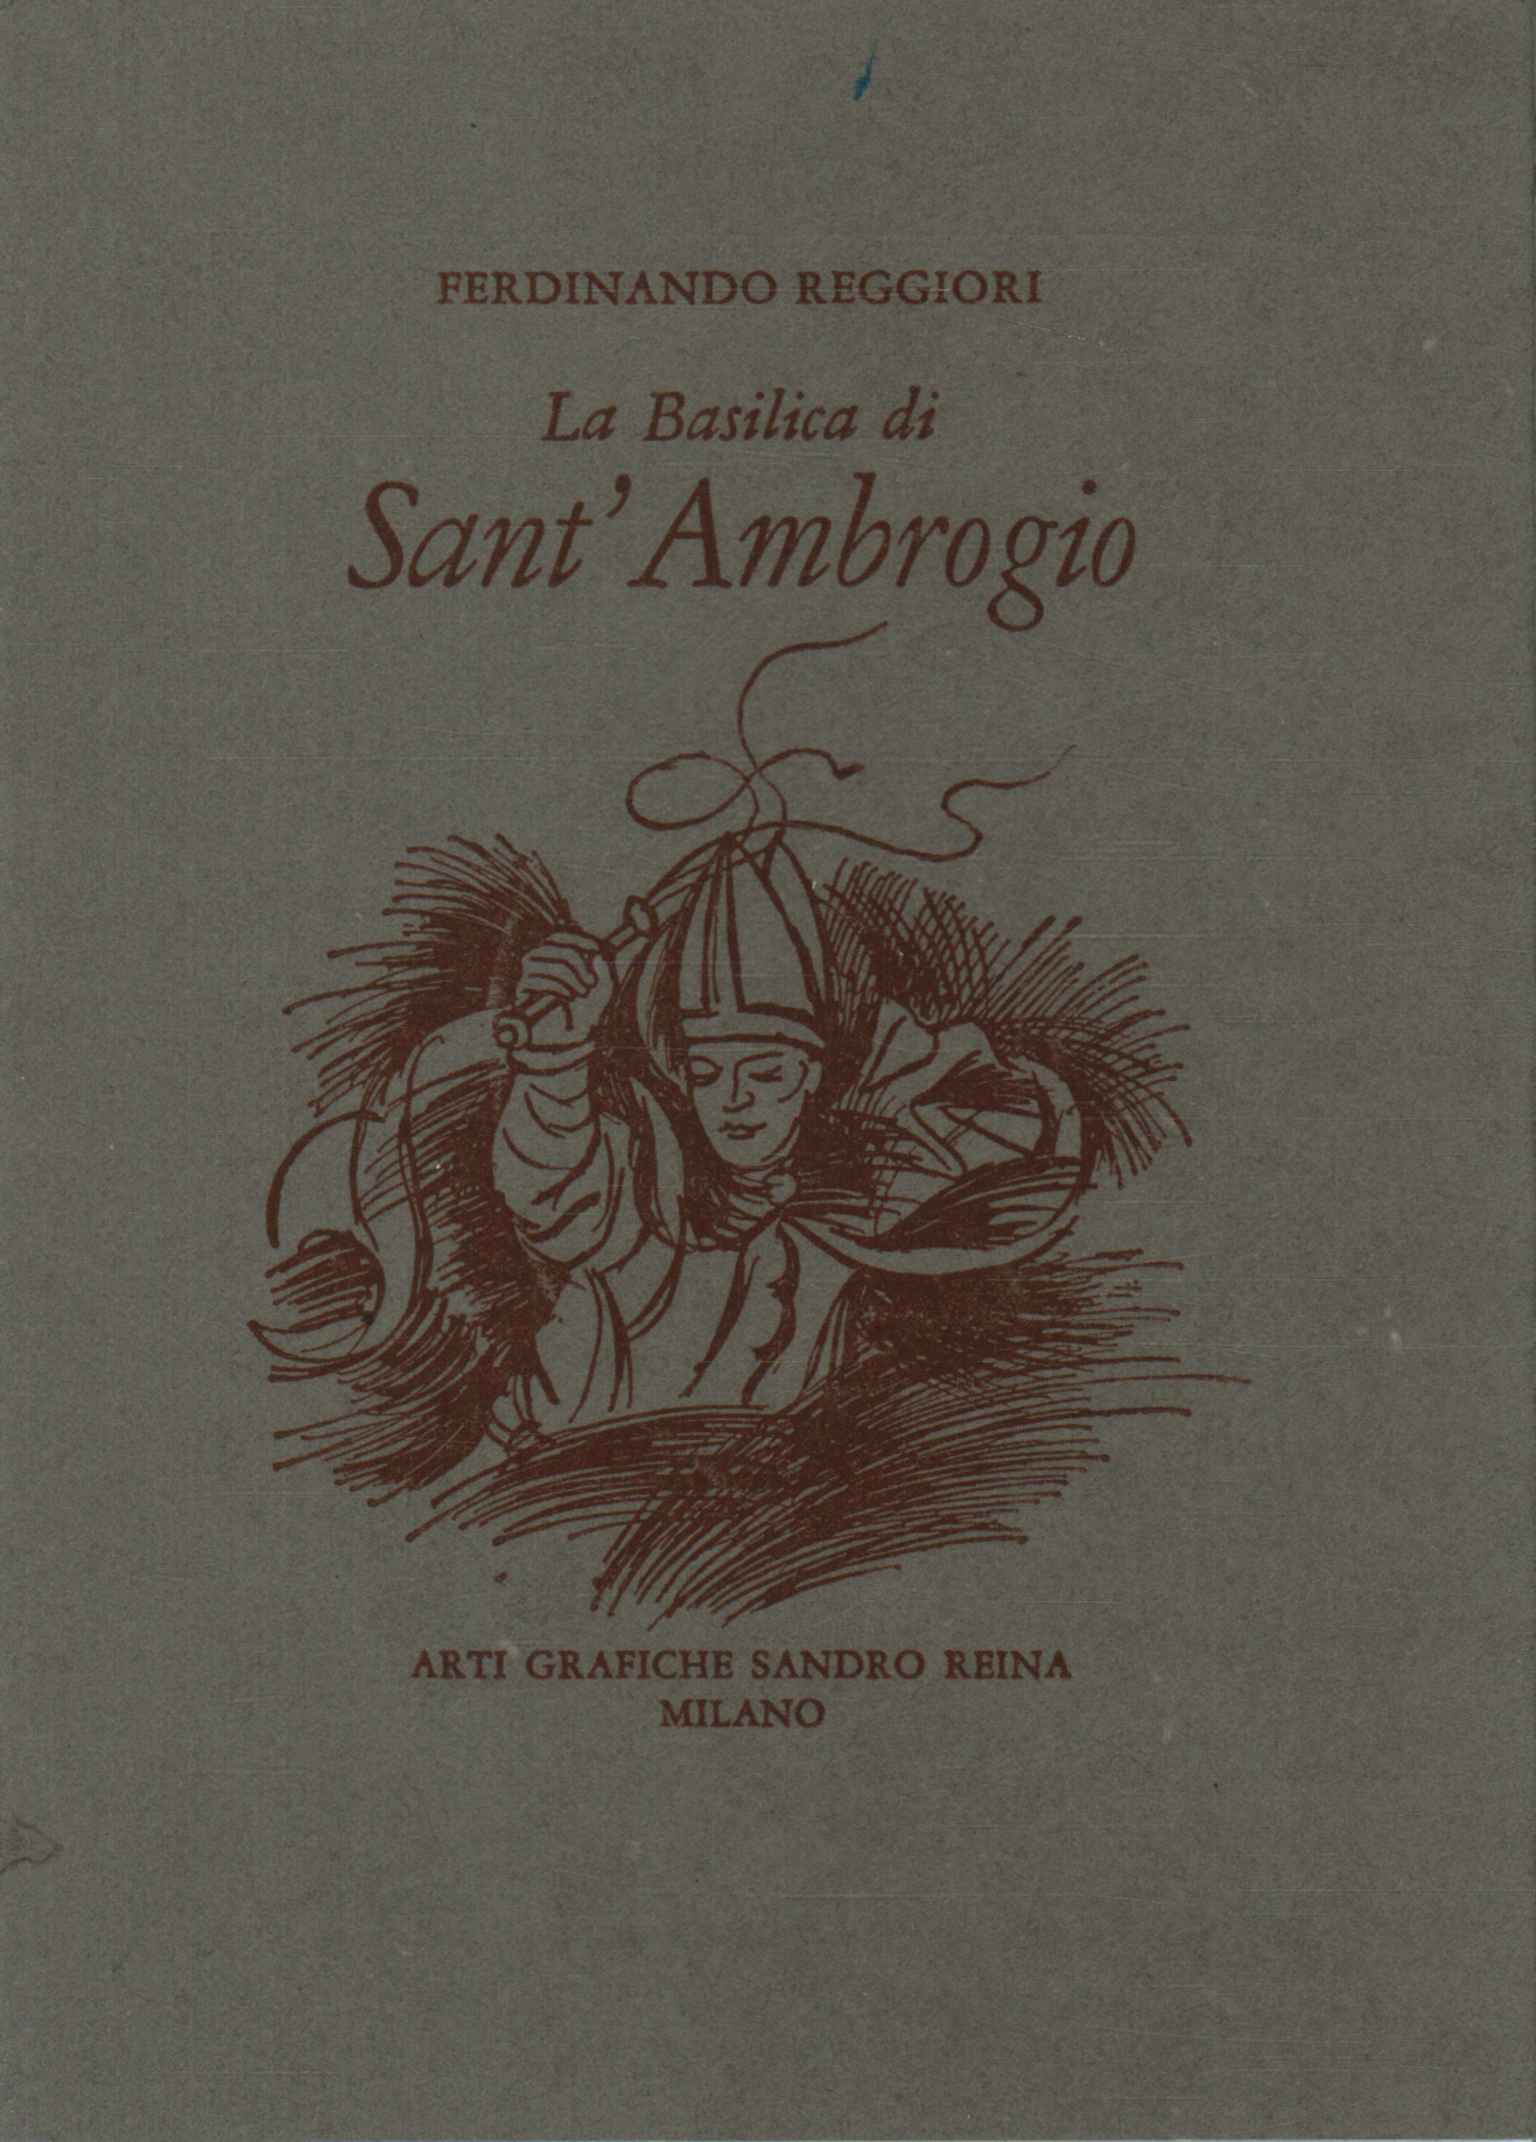 The Basilica of Sant'Ambrogio